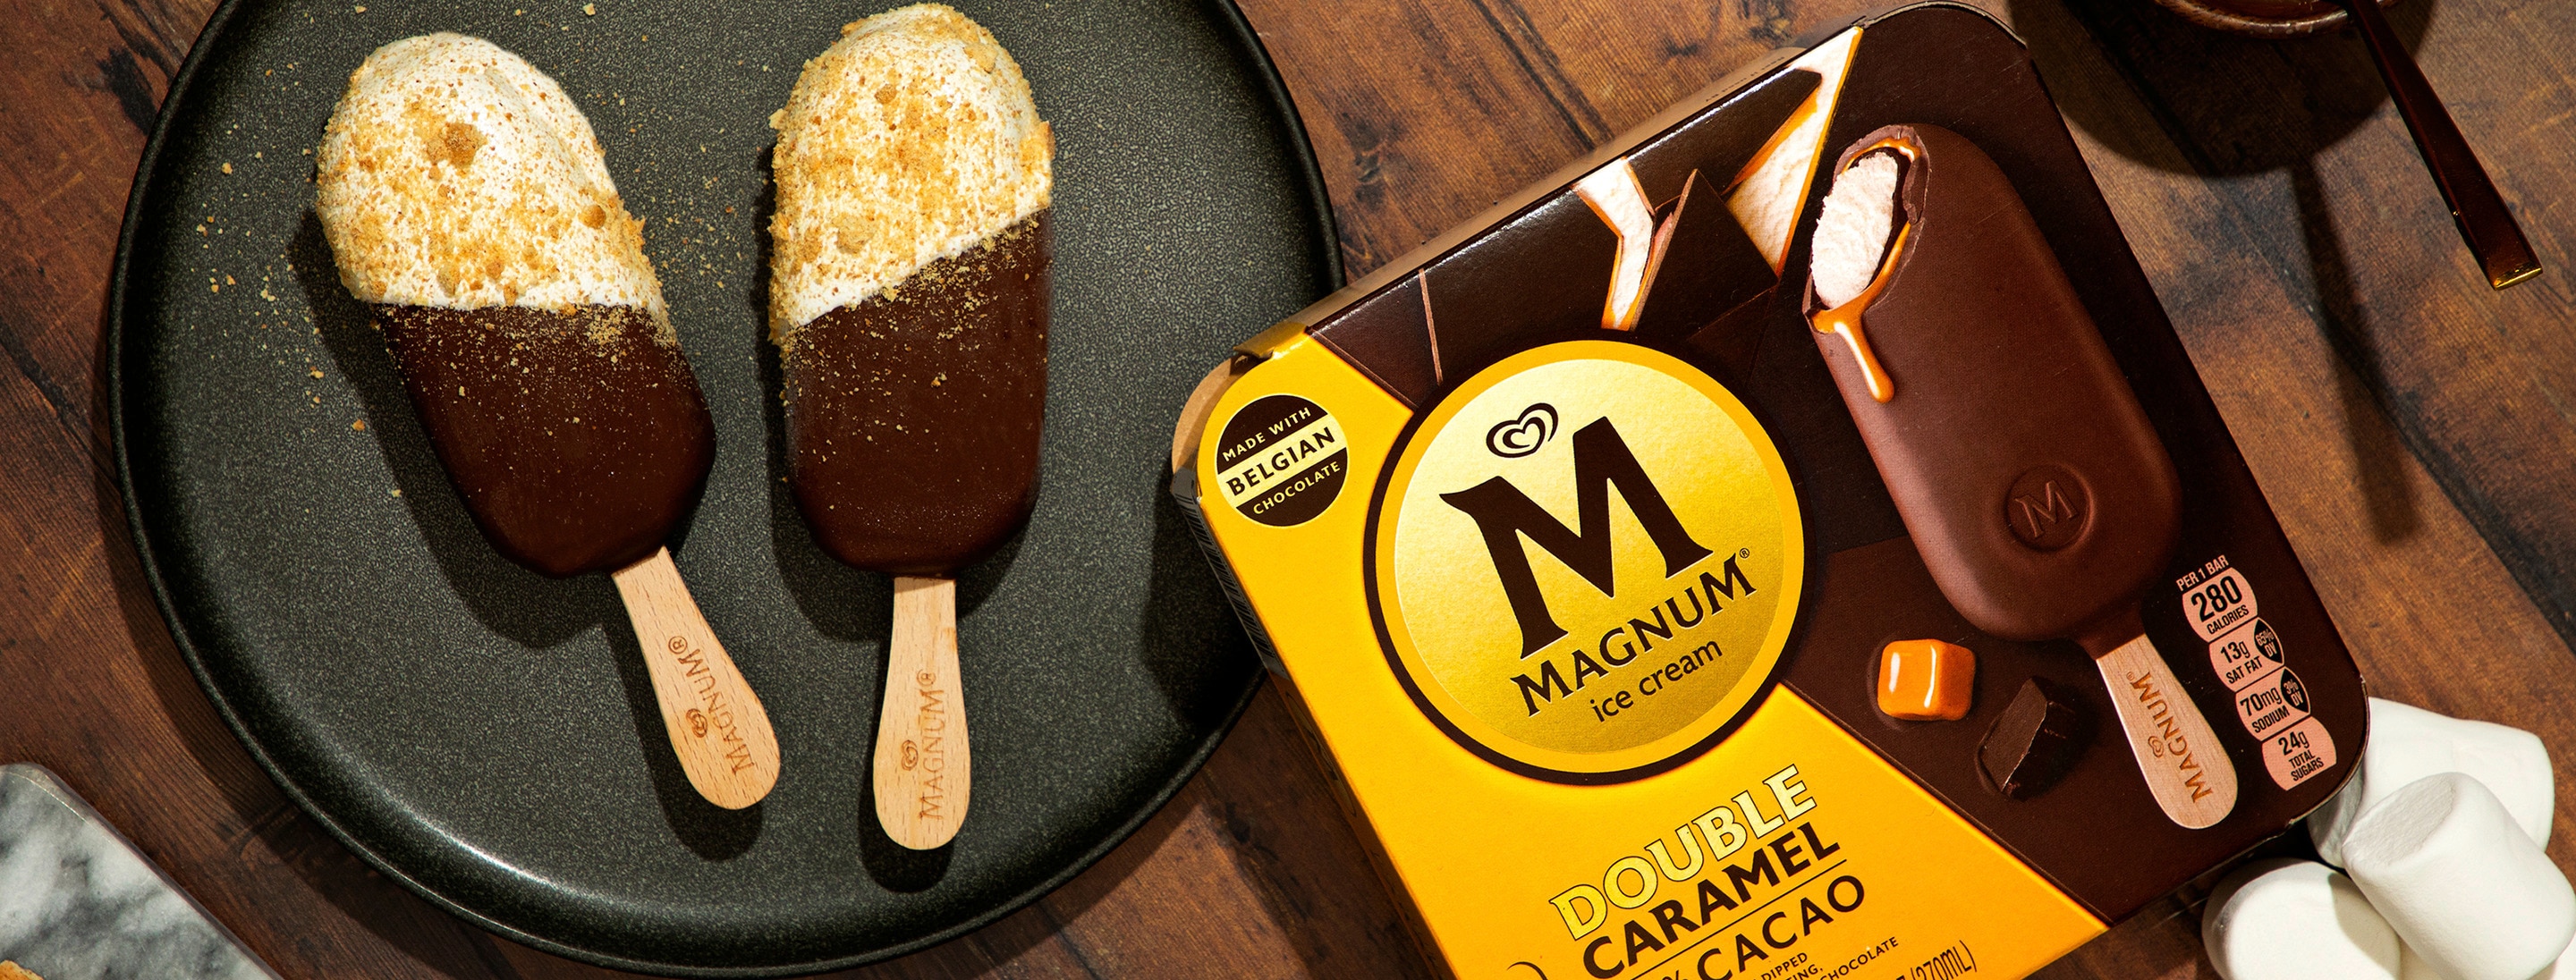 Magnum Double Caramel Ice Cream Bars